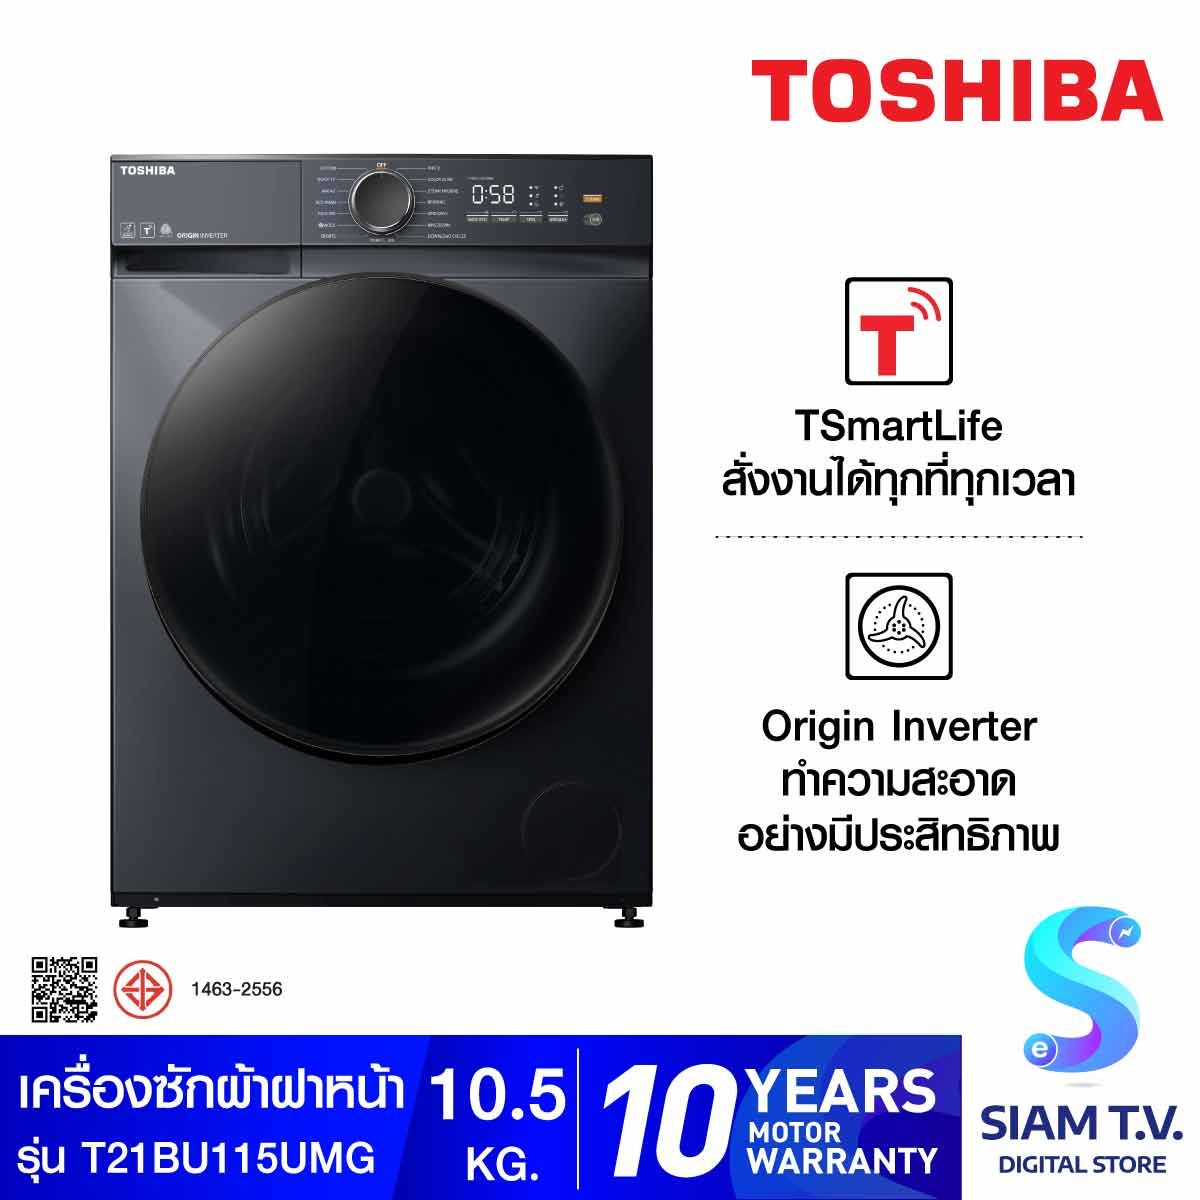 TOSHIBA เครื่องซักผ้าฝาหน้า 10.5Kg. 1200รอบ รุ่นTW-T21BU115UWT(MG)